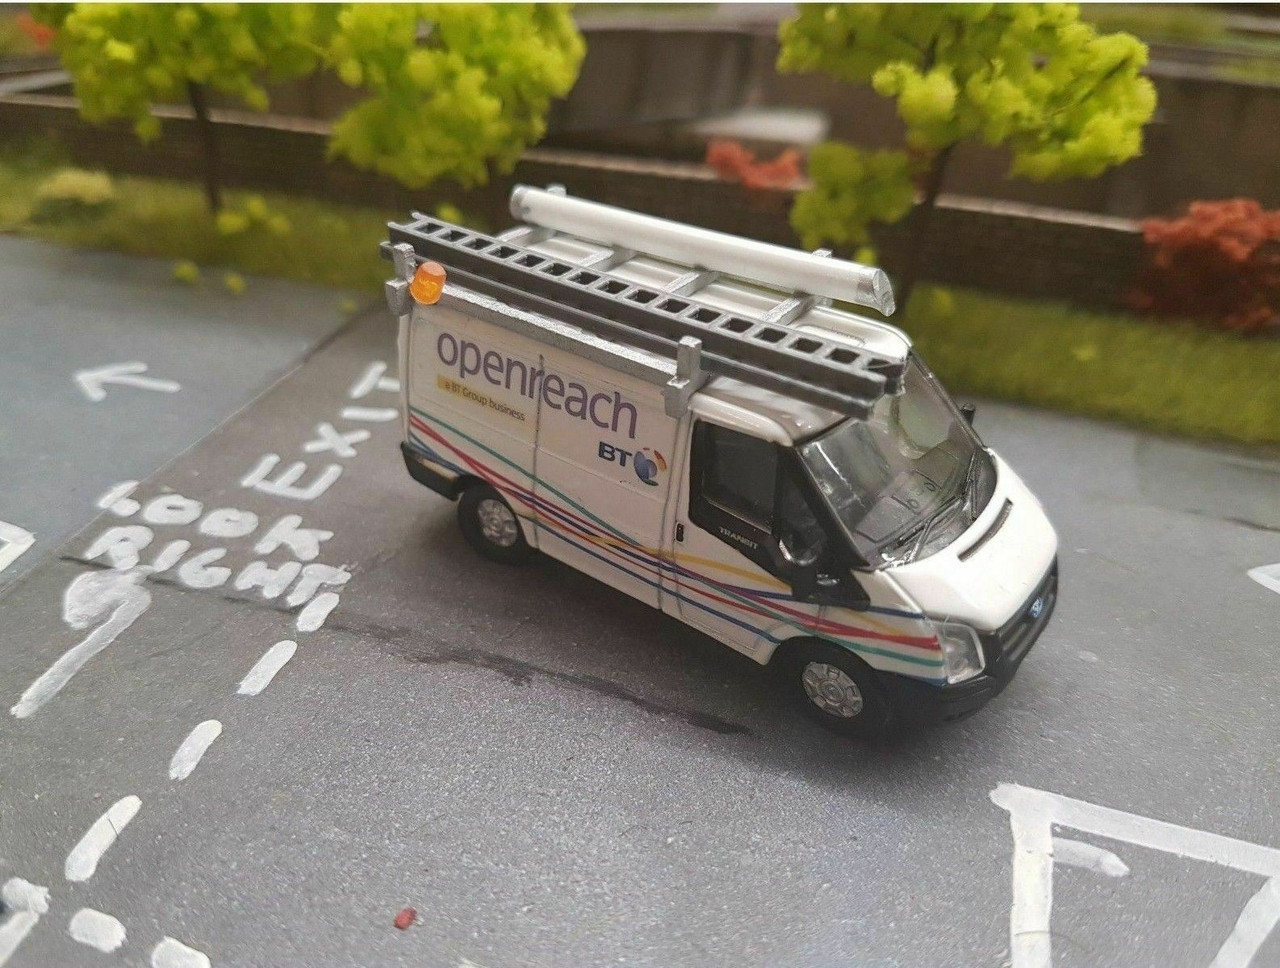 openreach toy van